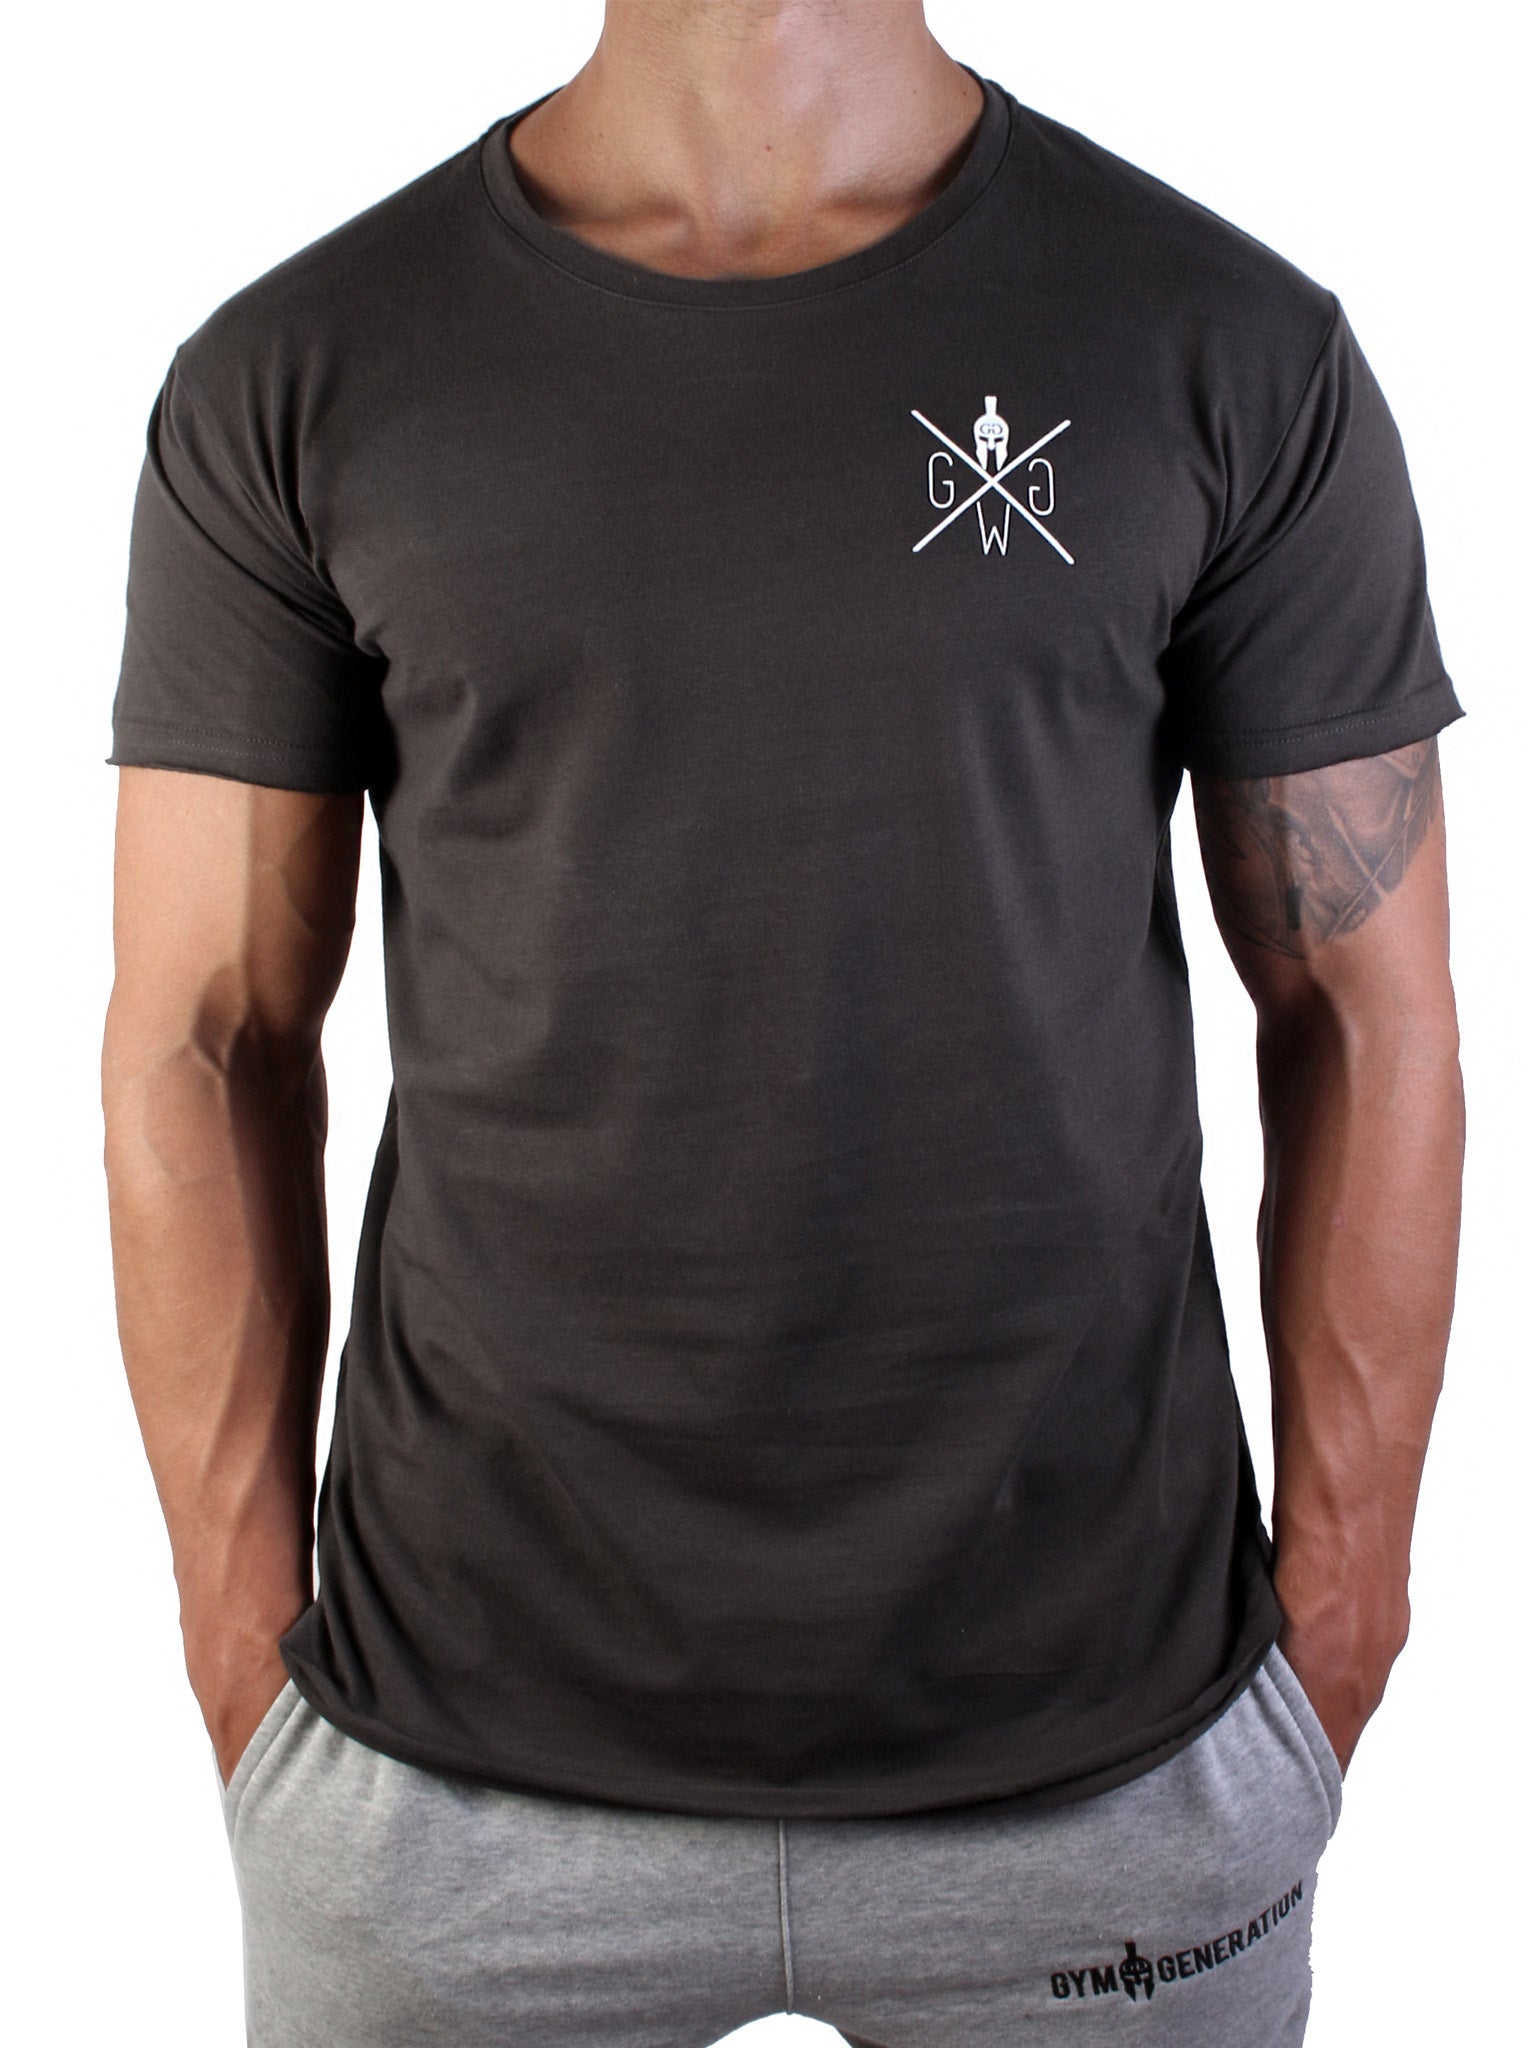 Urban Warrior T-Shirt - Grau - Gym Generation®--www.gymgeneration.ch